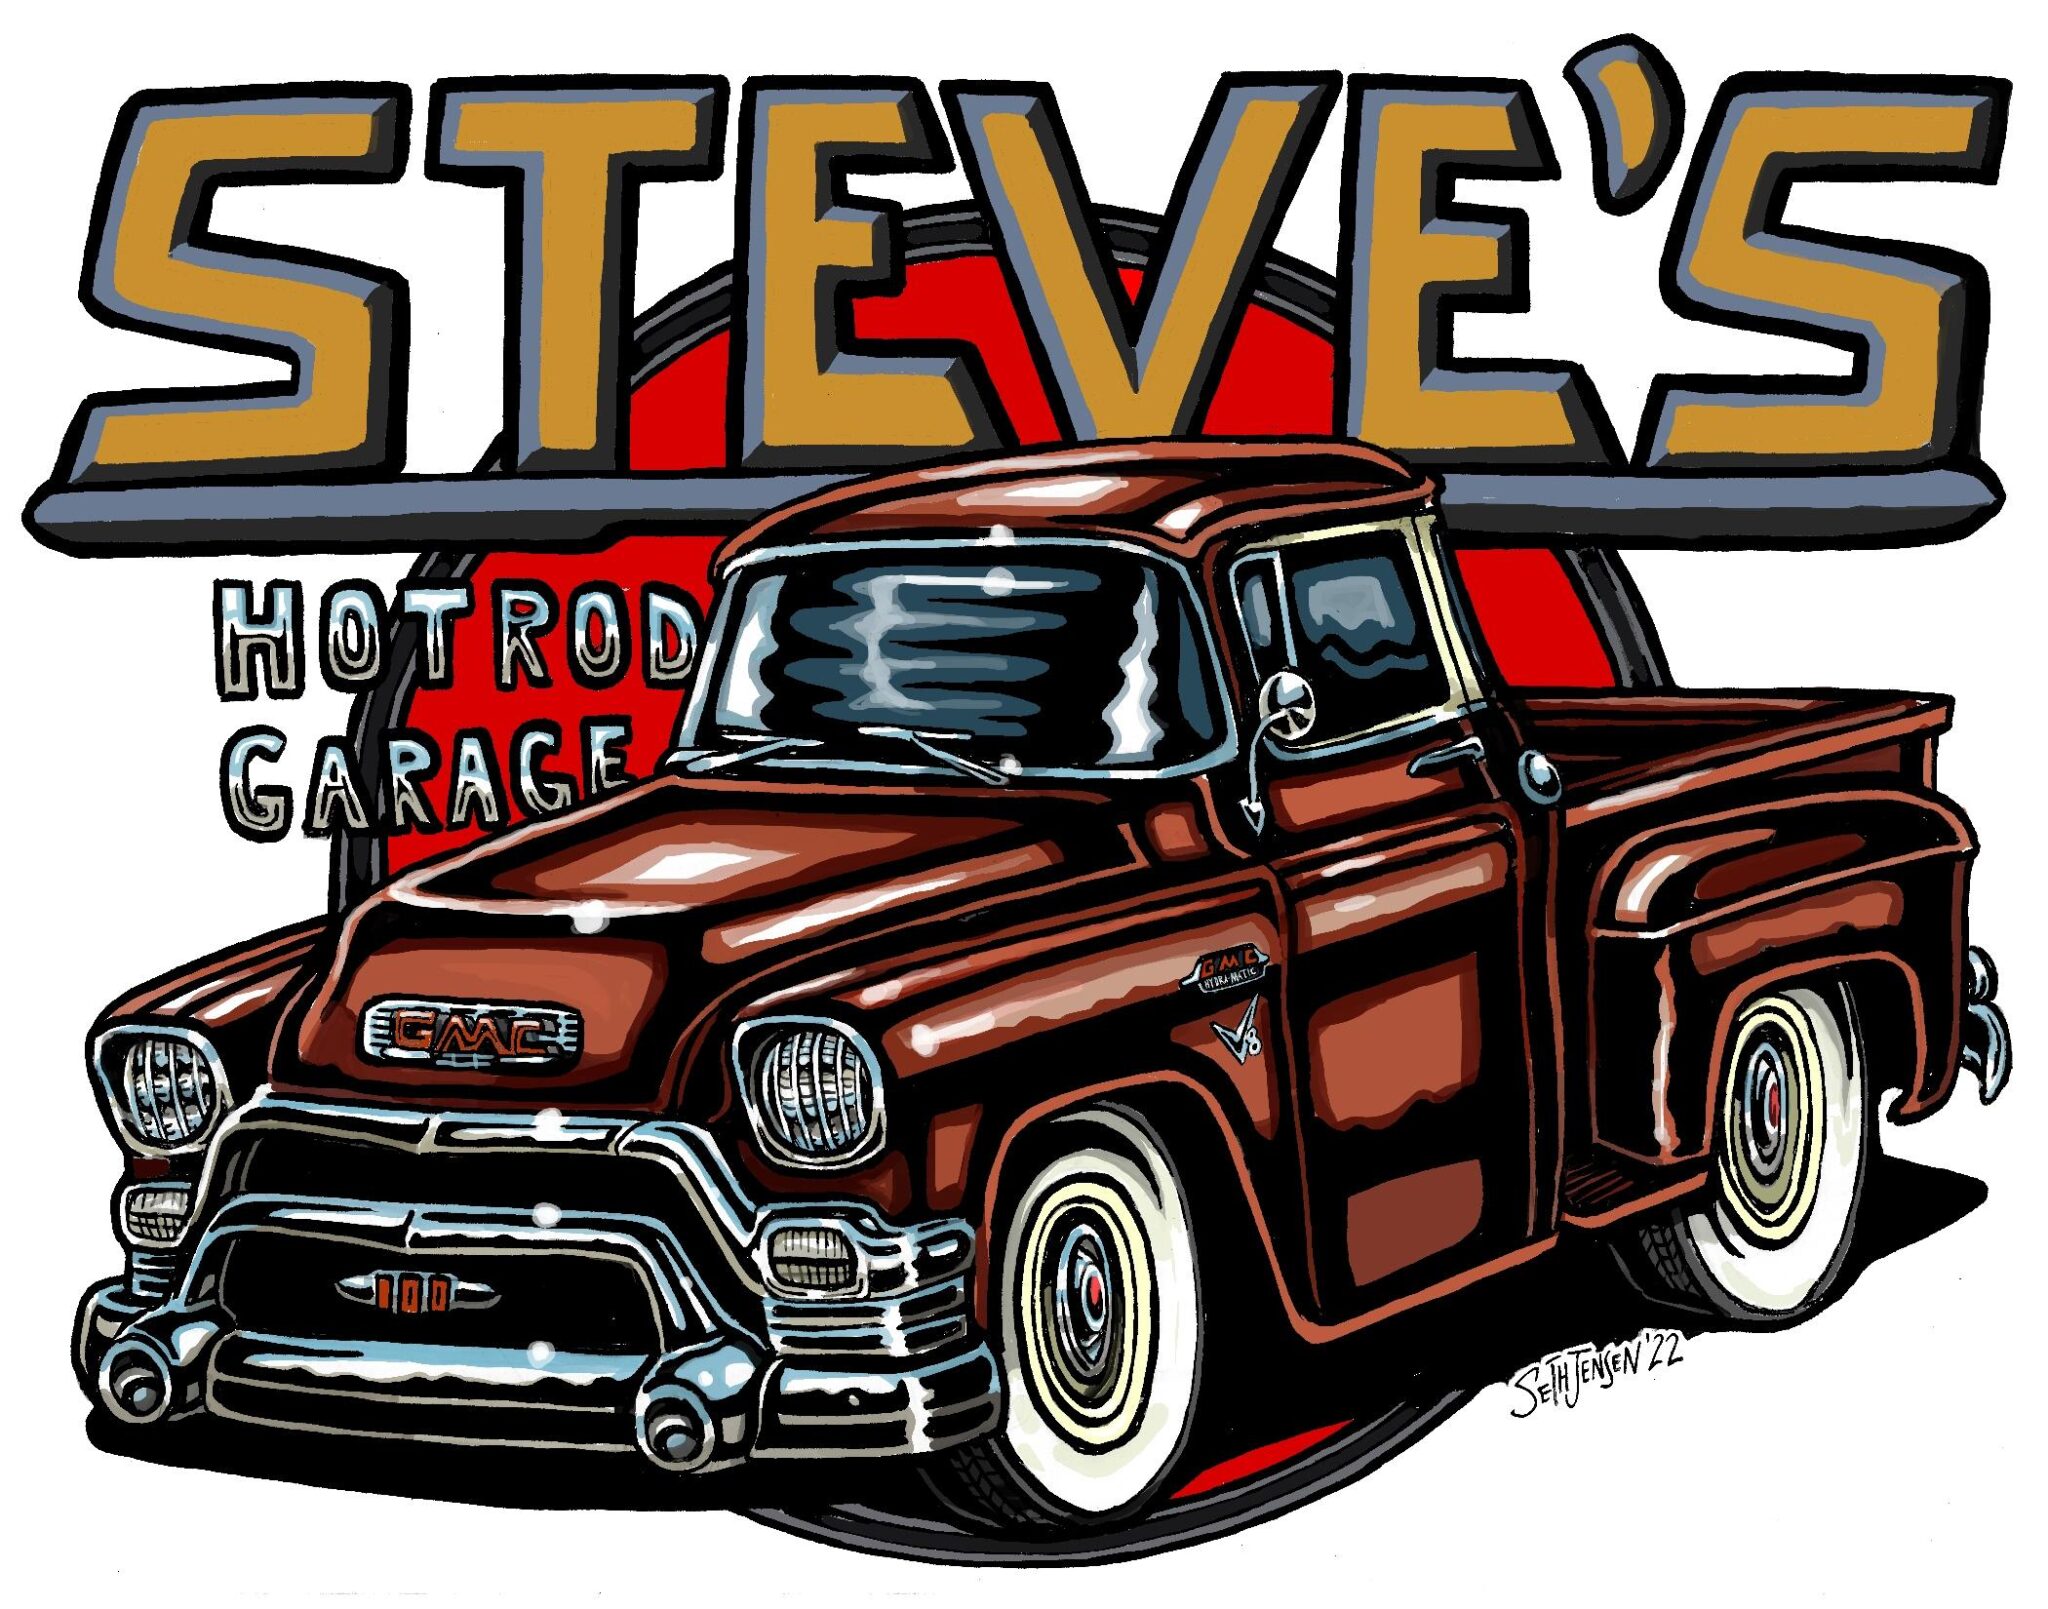 Steve’s truck chrome letters background